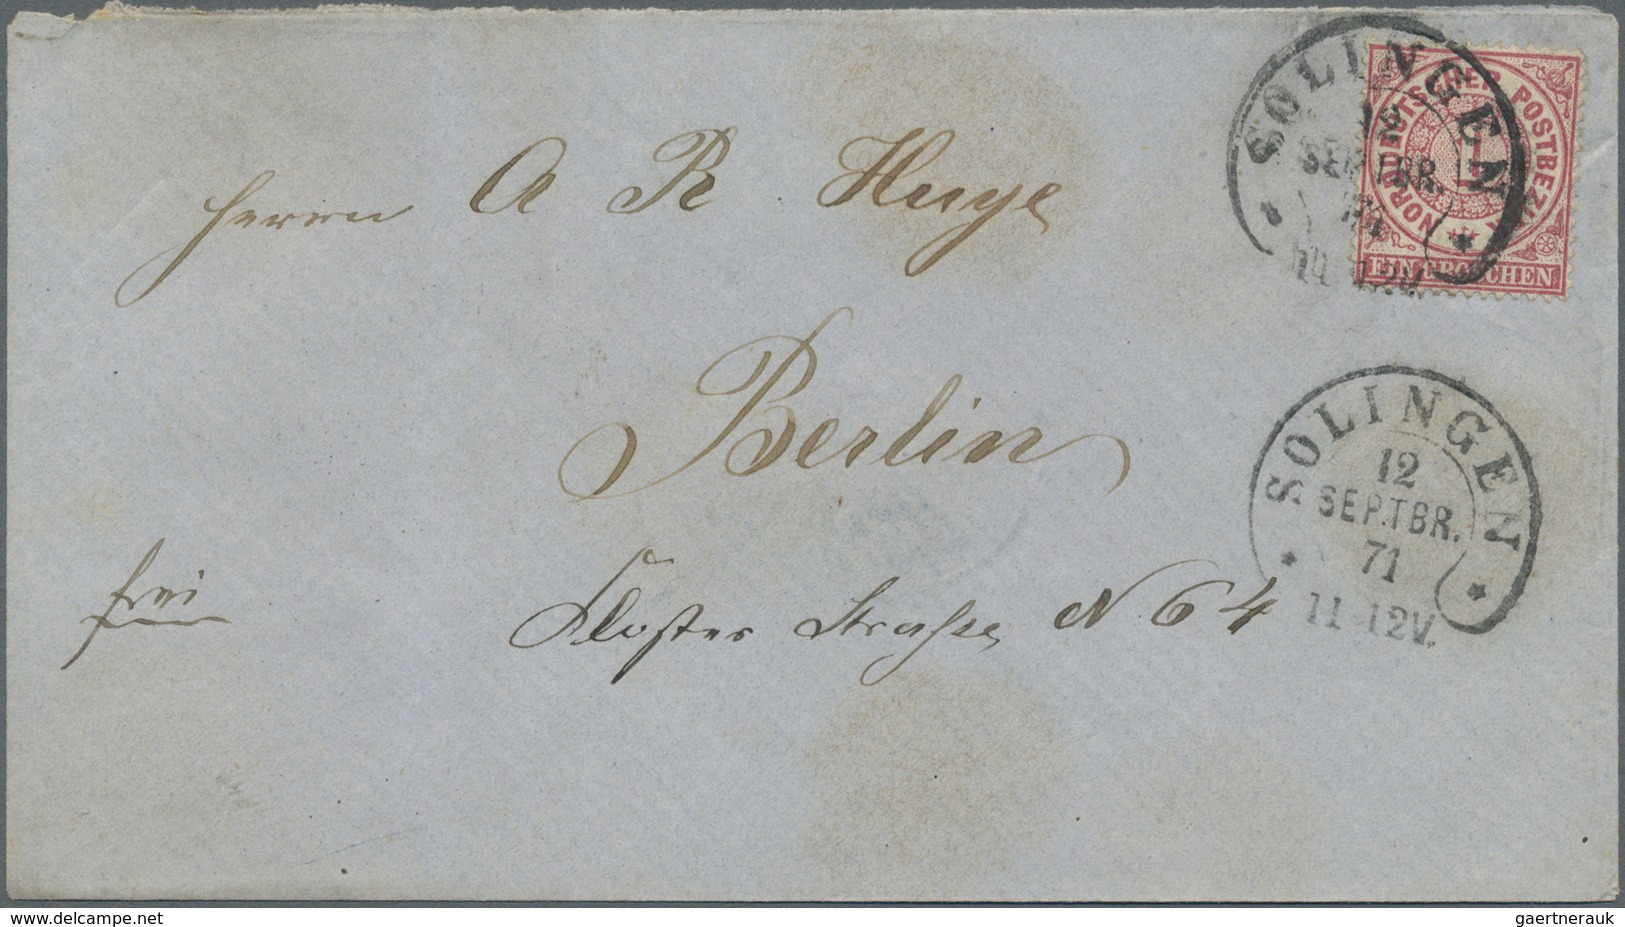 Br Deutsches Reich - Hufeisenstempel: 1871, SOLINGEN, sieben Briefe je mit Hufeisenstempelentwertung sl